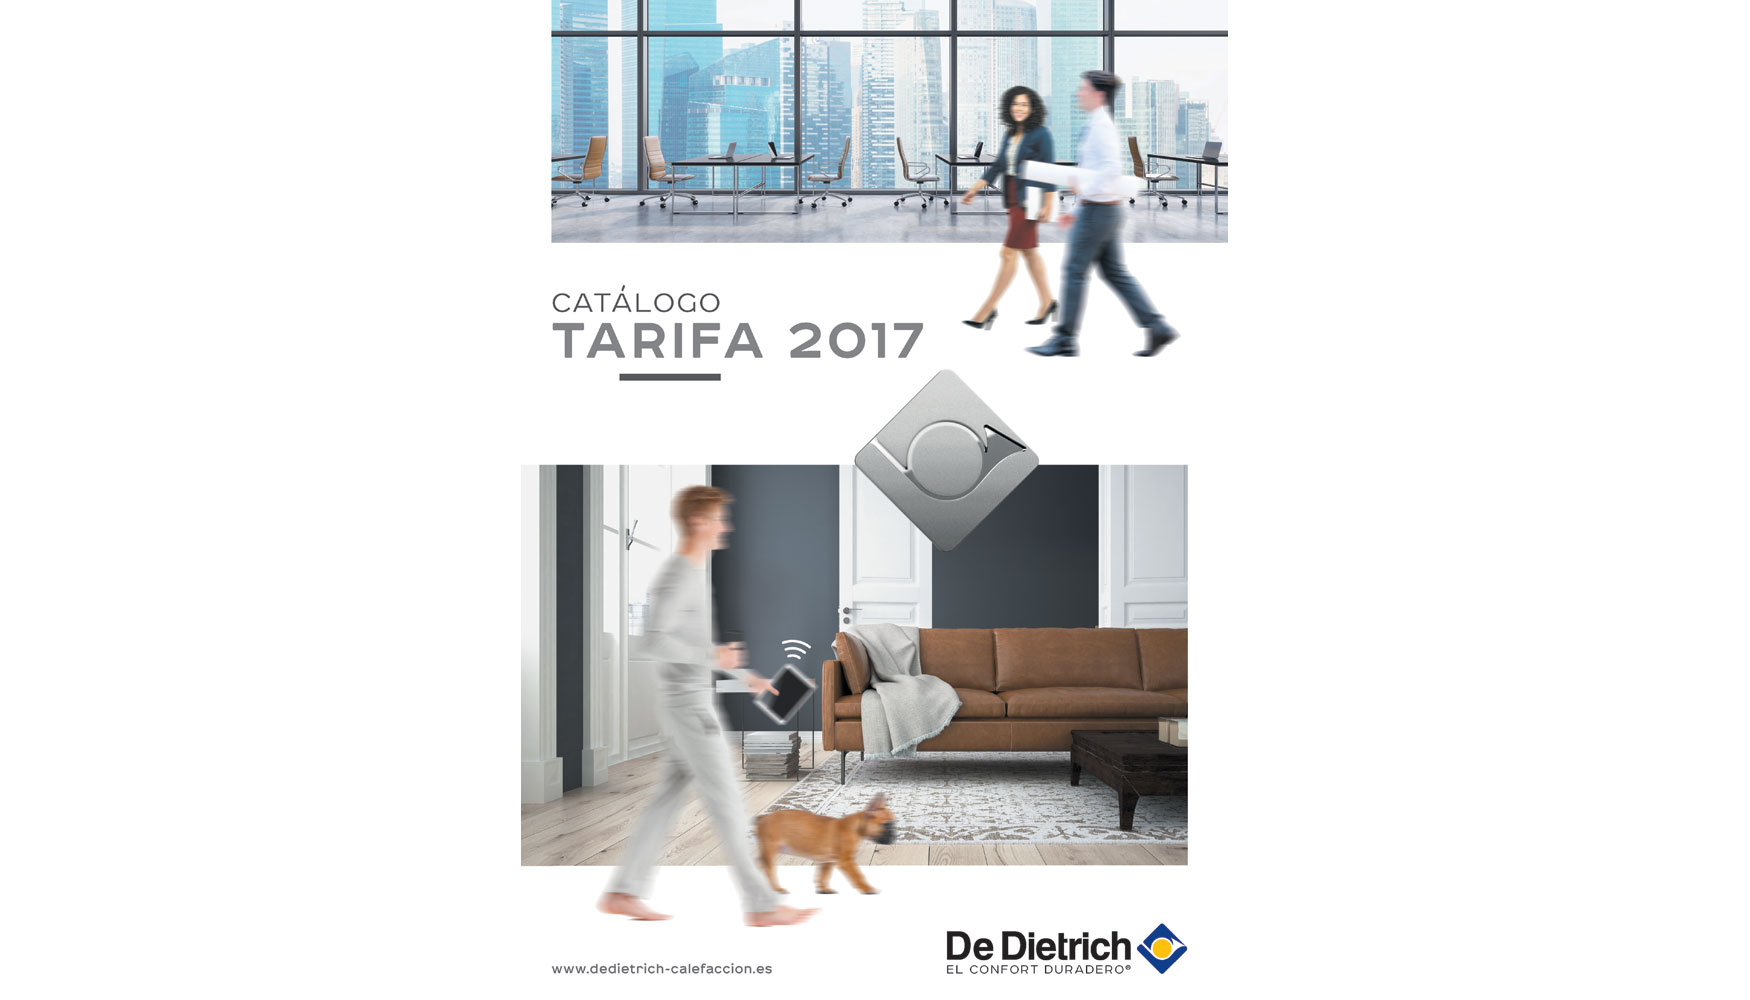 Nuevo Catlogo Tarifa 2017 de De Dietrich